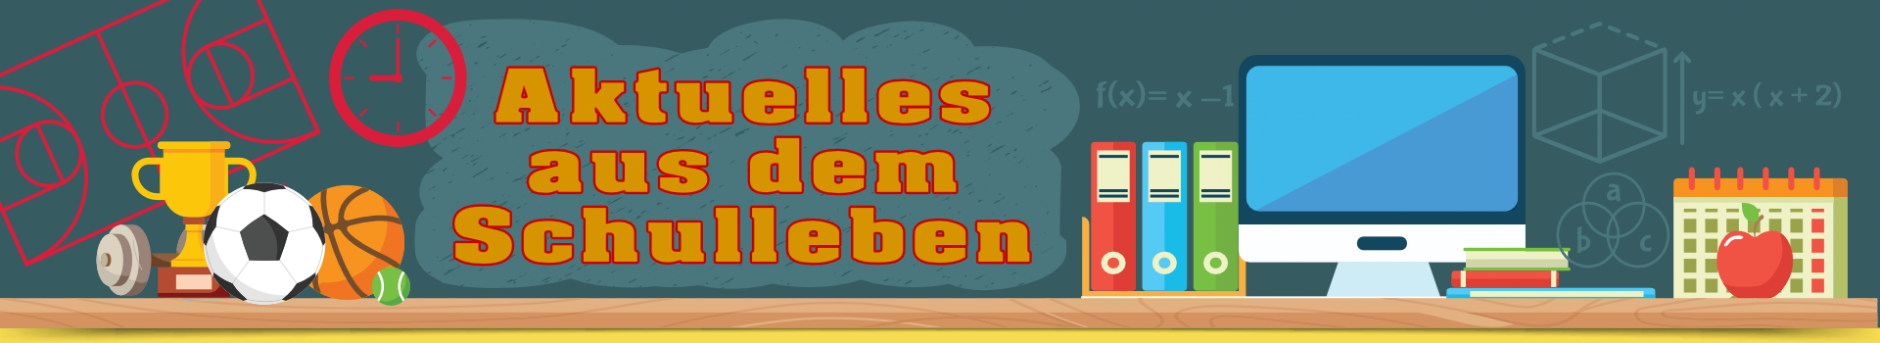 Banner Schulleben